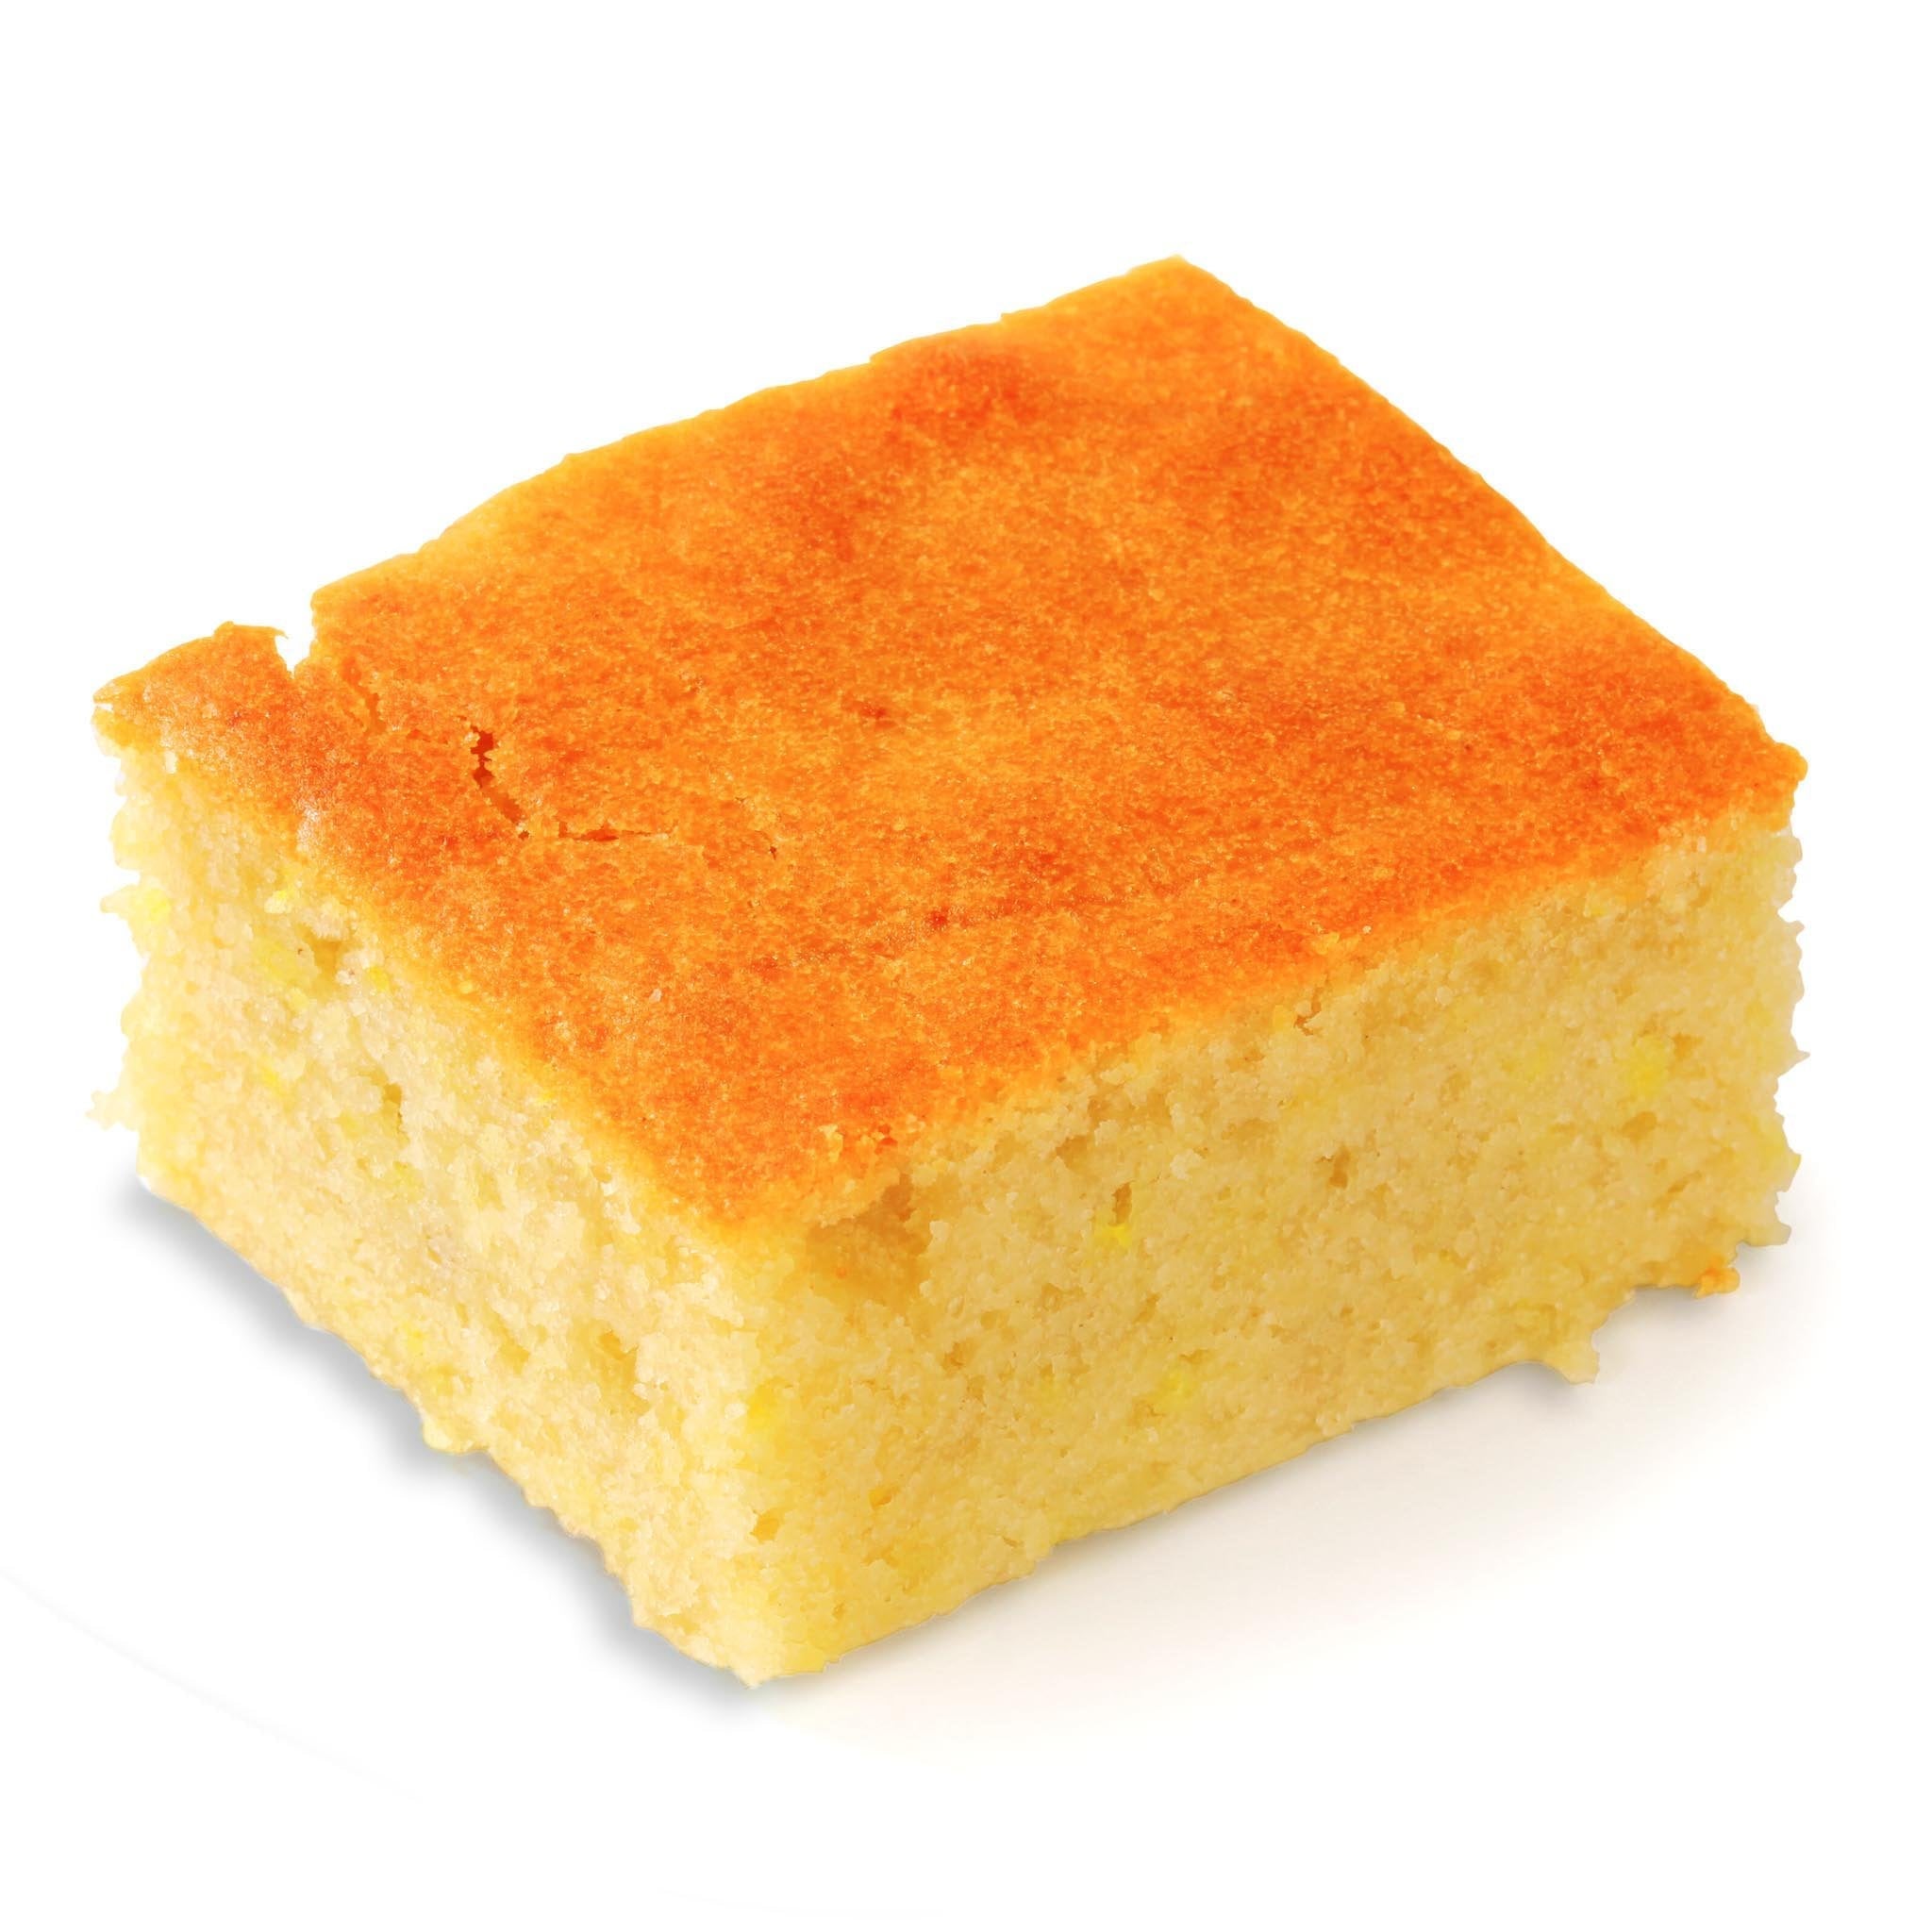 Hostess releases crypto-inspired sponge cakes - Commercial Baking